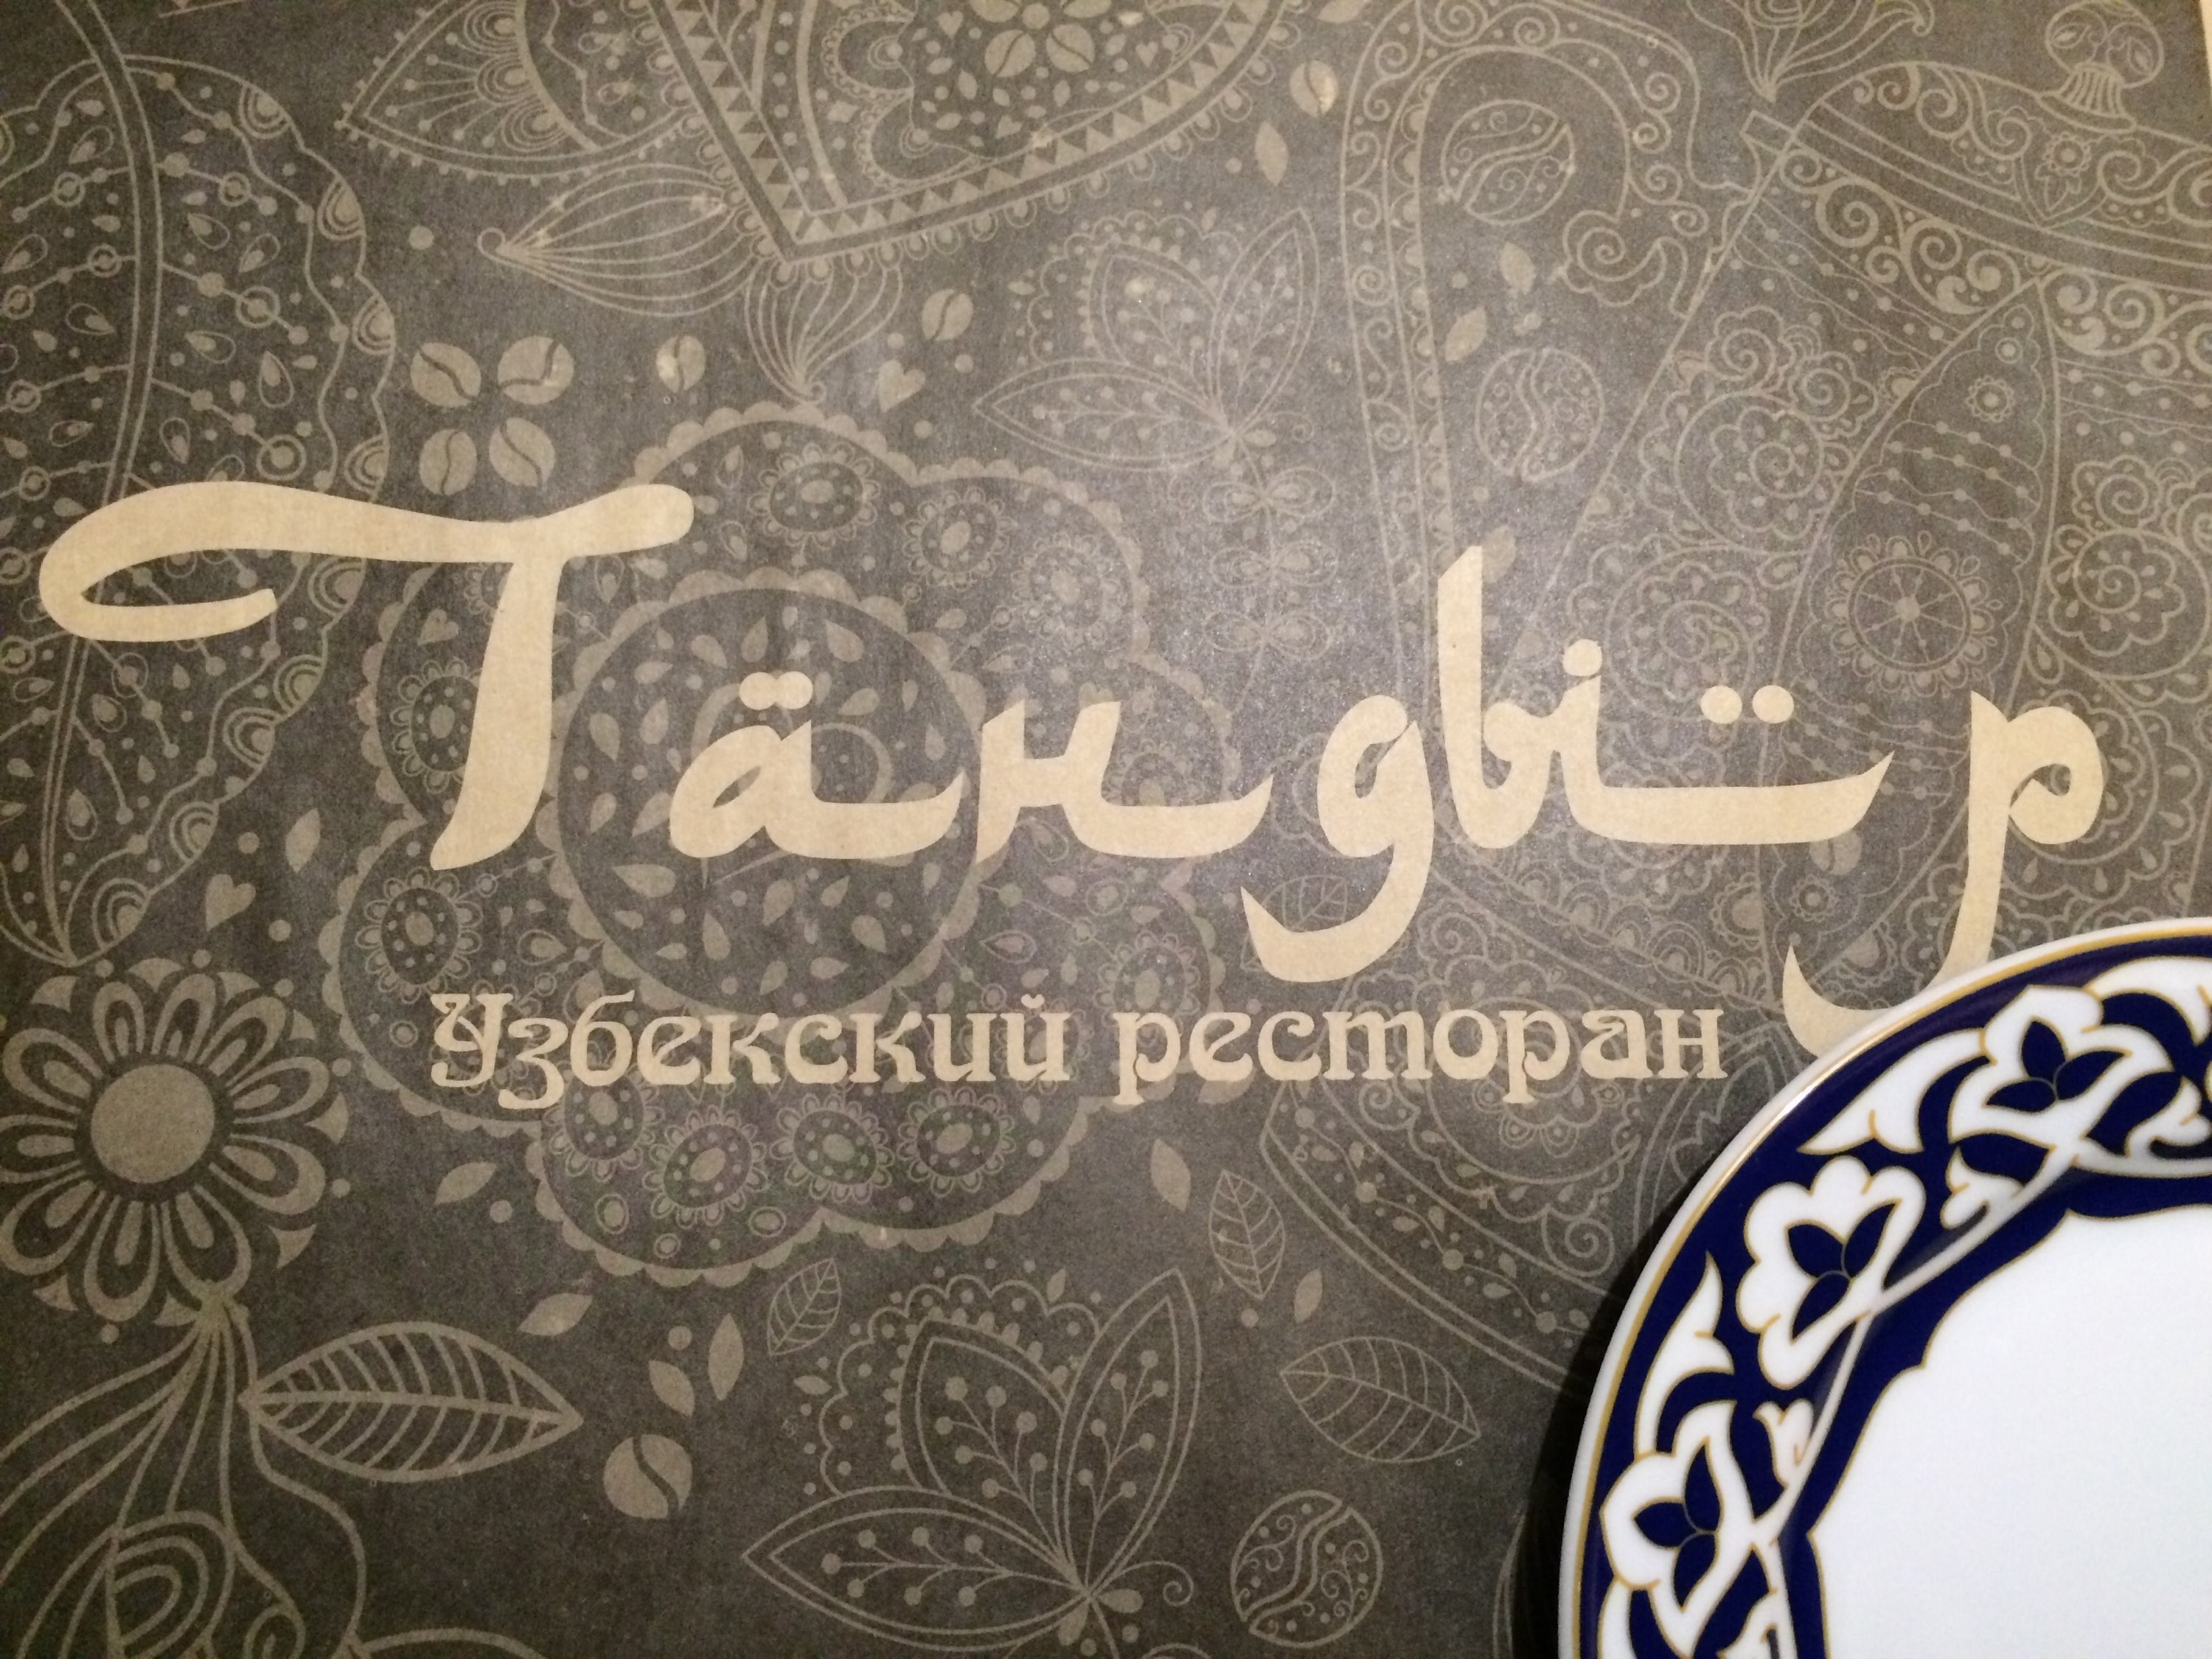 Восточный слоган. Баннер для кафе Восточной кухни. Восточная кухня. Узбекская кухня баннер. Чайхана реклама.